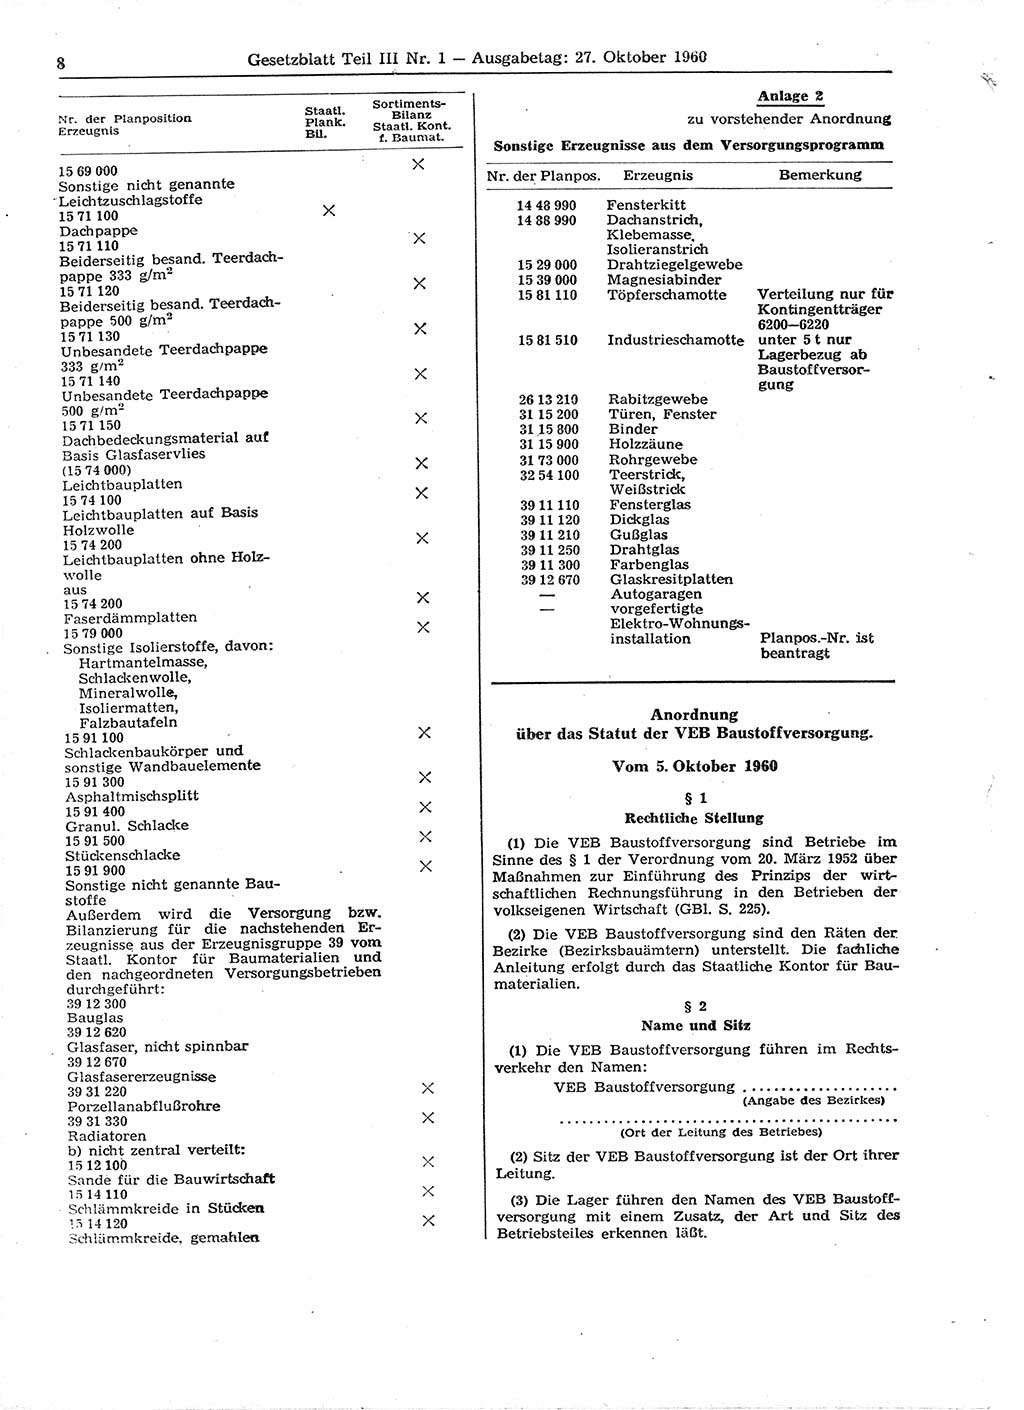 Gesetzblatt (GBl.) der Deutschen Demokratischen Republik (DDR) Teil ⅠⅠⅠ 1960, Seite 8 (GBl. DDR ⅠⅠⅠ 1960, S. 8)